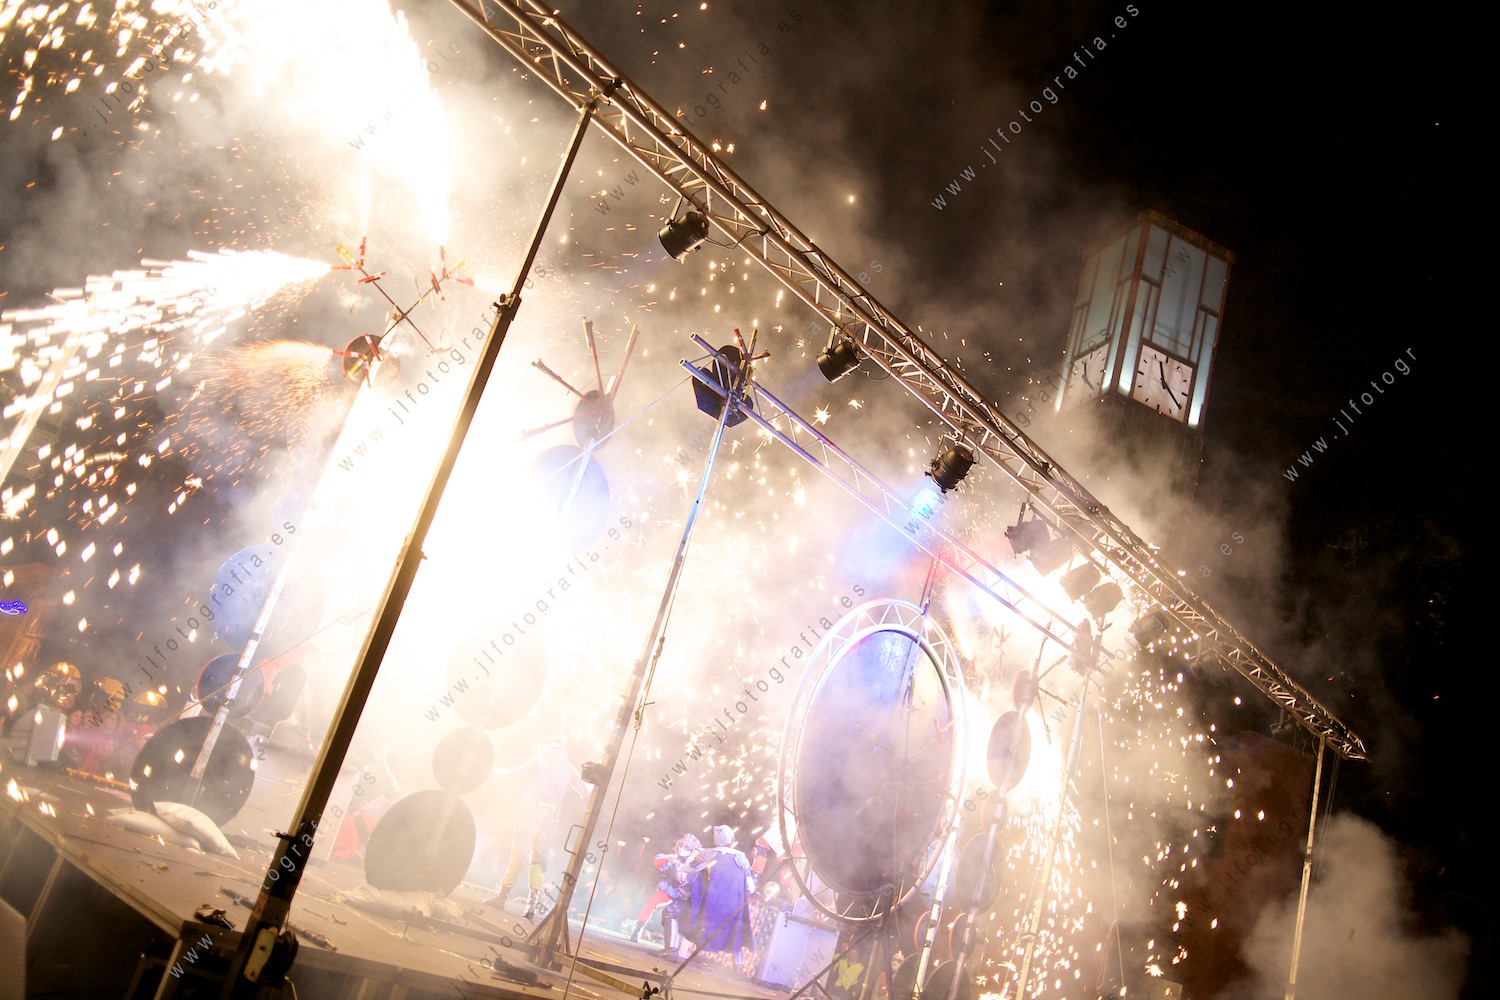 Fiesta de fin de año en Barakaldo con el espectáculo piroténico Disco Death, chispas delante del ayuntamiento.